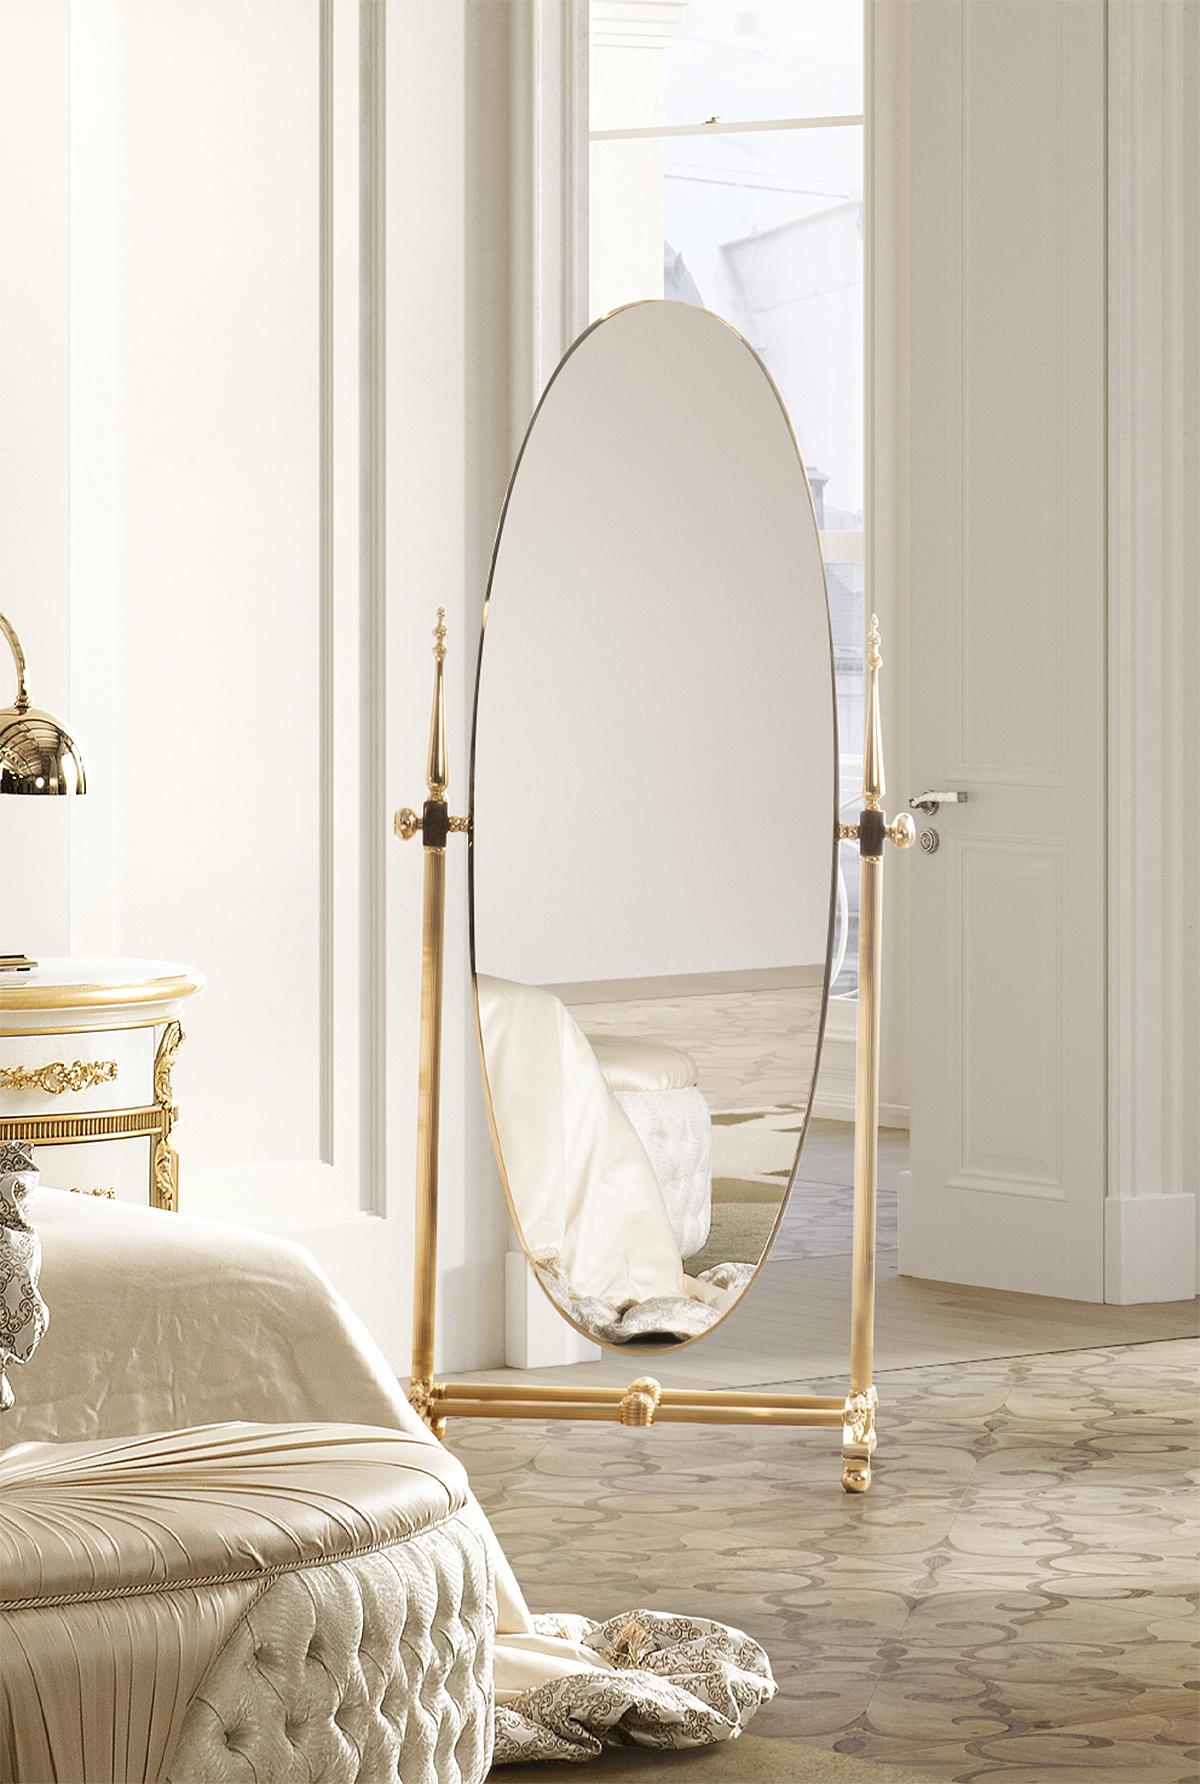 Der kippbare Spiegel EL065 ist eine elegante Kreation von hoher handwerklicher Qualität, ein Möbelstück, das jedem Raum Charme und Stil verleihen wird.

Das Hauptmaterial dieses Spiegels ist Messing, das für seinen Glanz und seine